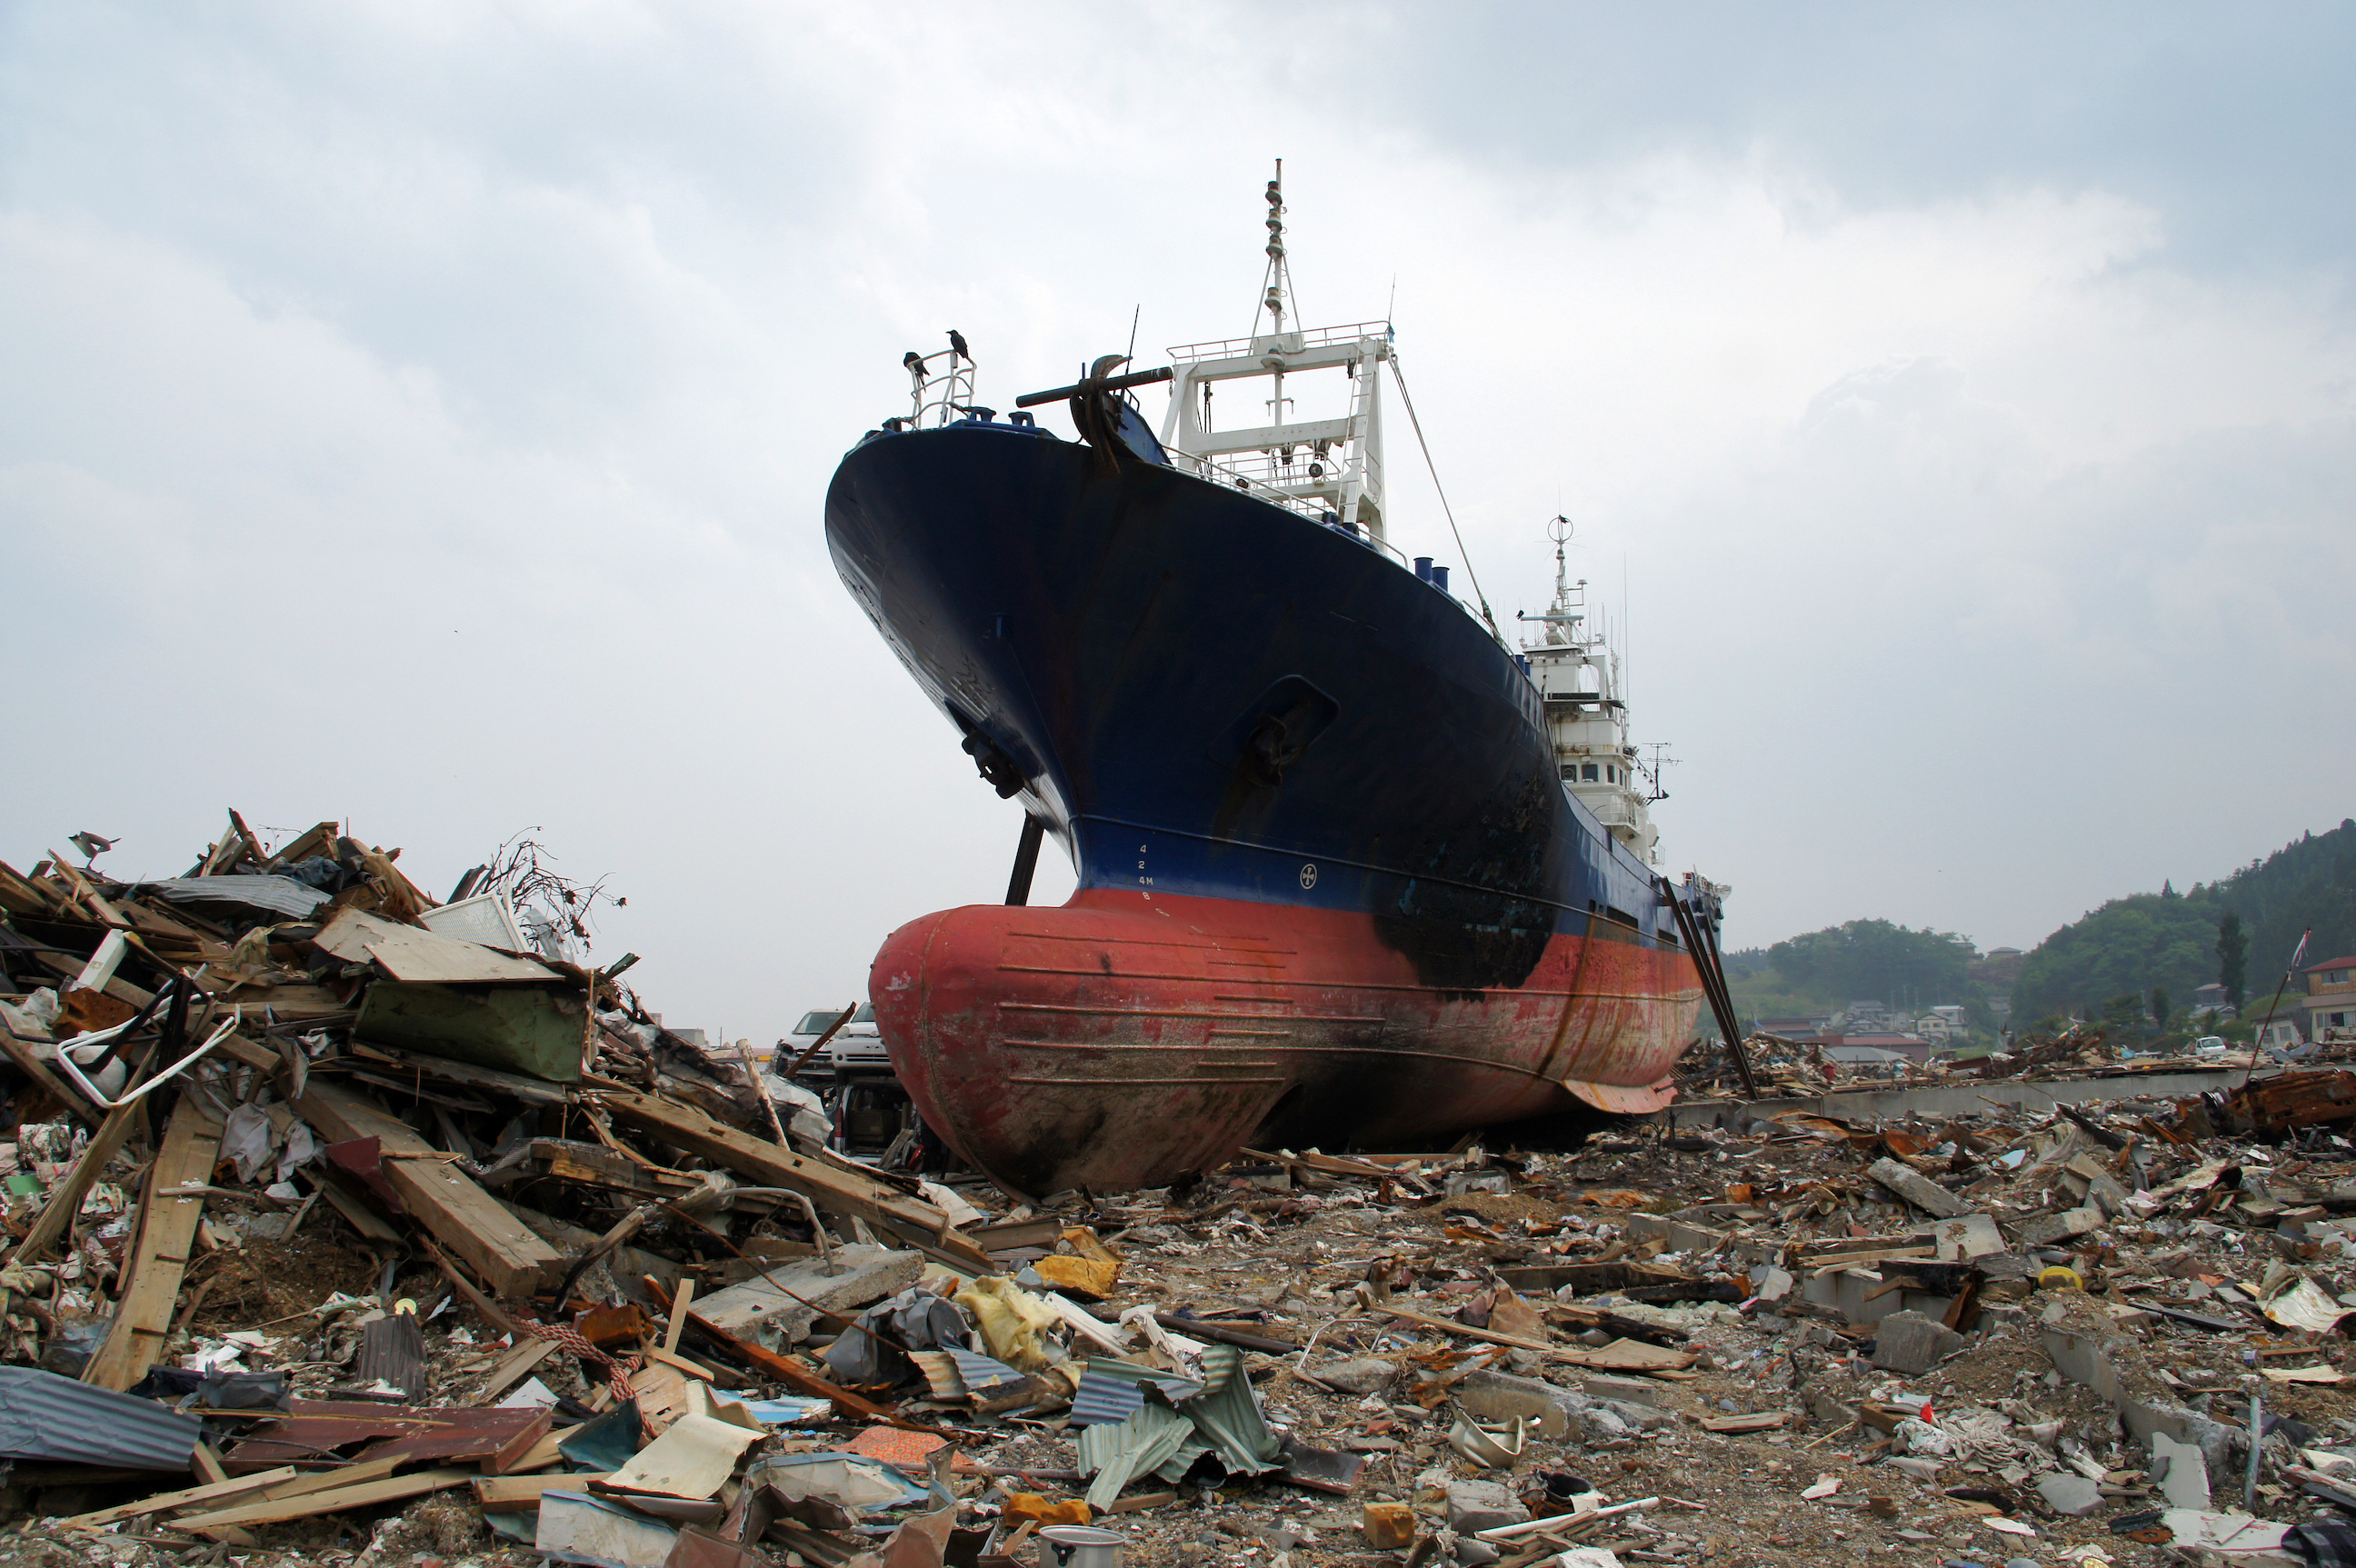 Le séisme de Tōhoku et le tsunami qui a suivi ont causé d'immenses dégâts sur les côtes japonaises en 2011. © lax15las, Adobe Stock